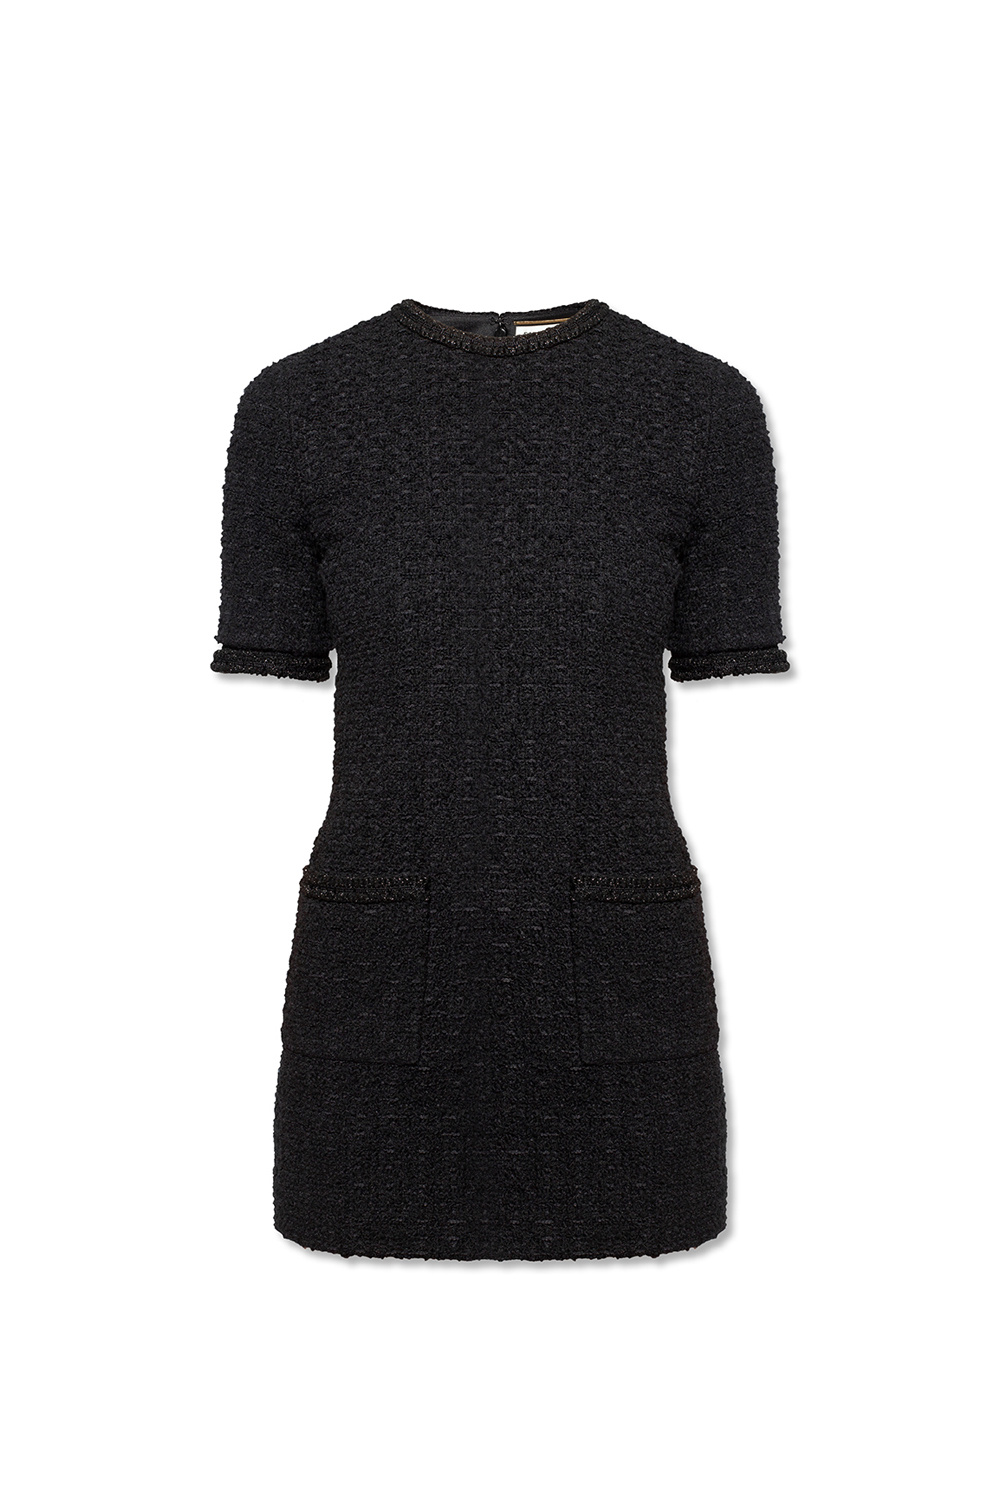 Saint Laurent Tweed dress